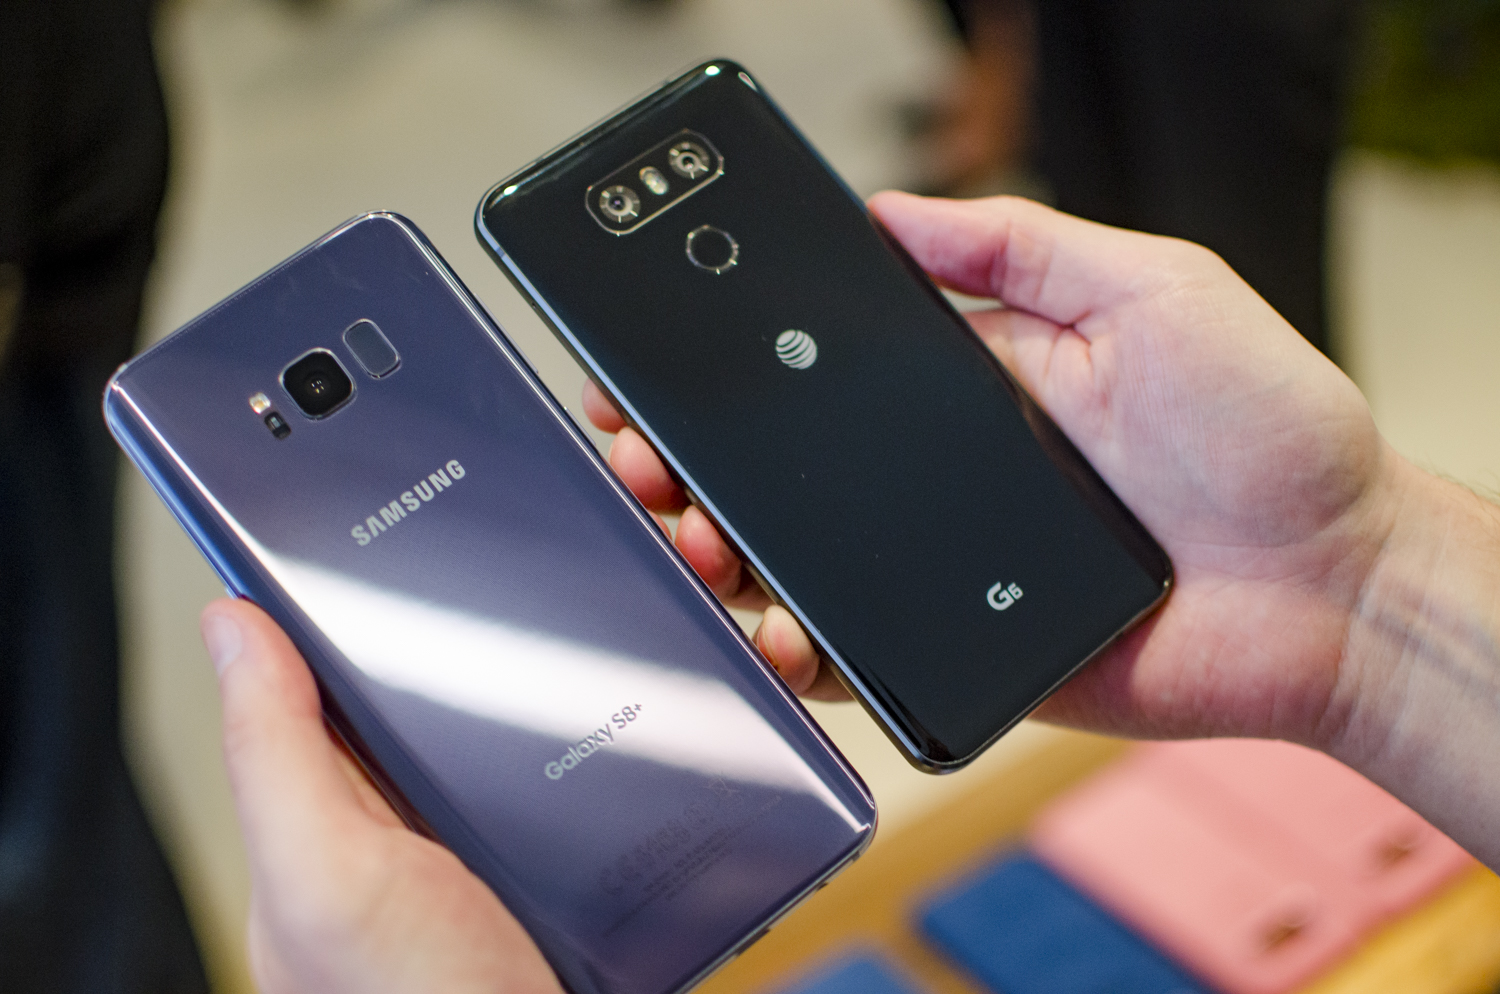 Samsung Galaxy S8 vs. LG G6, Specs Comparison